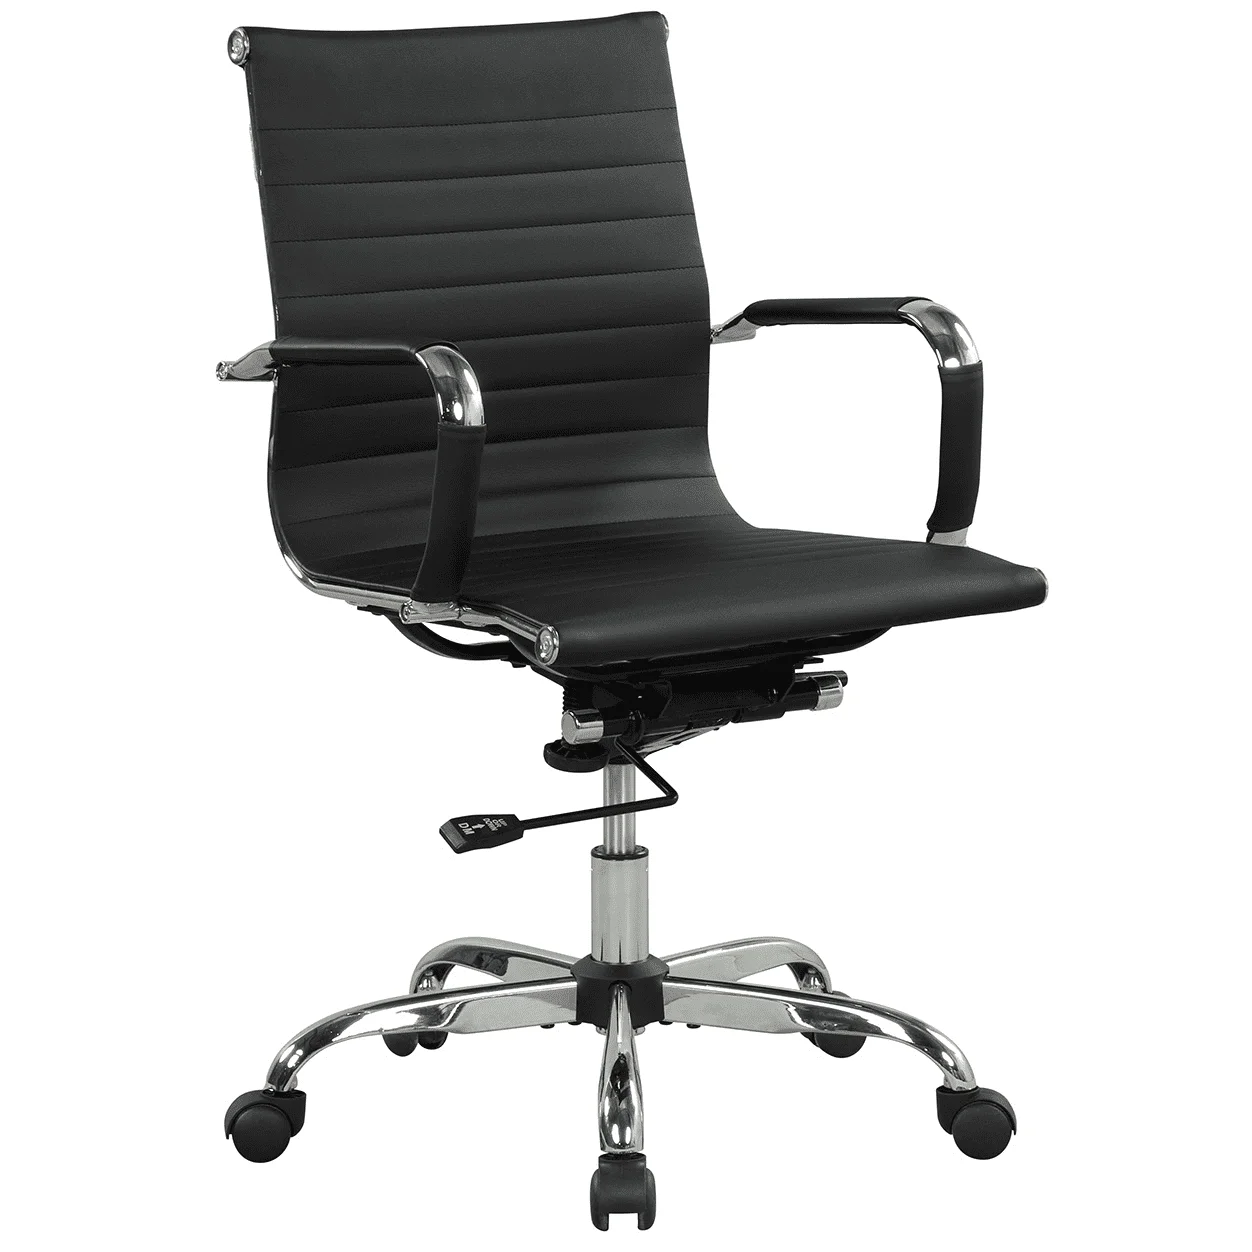 

Стул для менеджера 37,5 с регулируемой высотой и поворотом, объем 250 фунтов, черные офисные стулья, бесплатная доставка